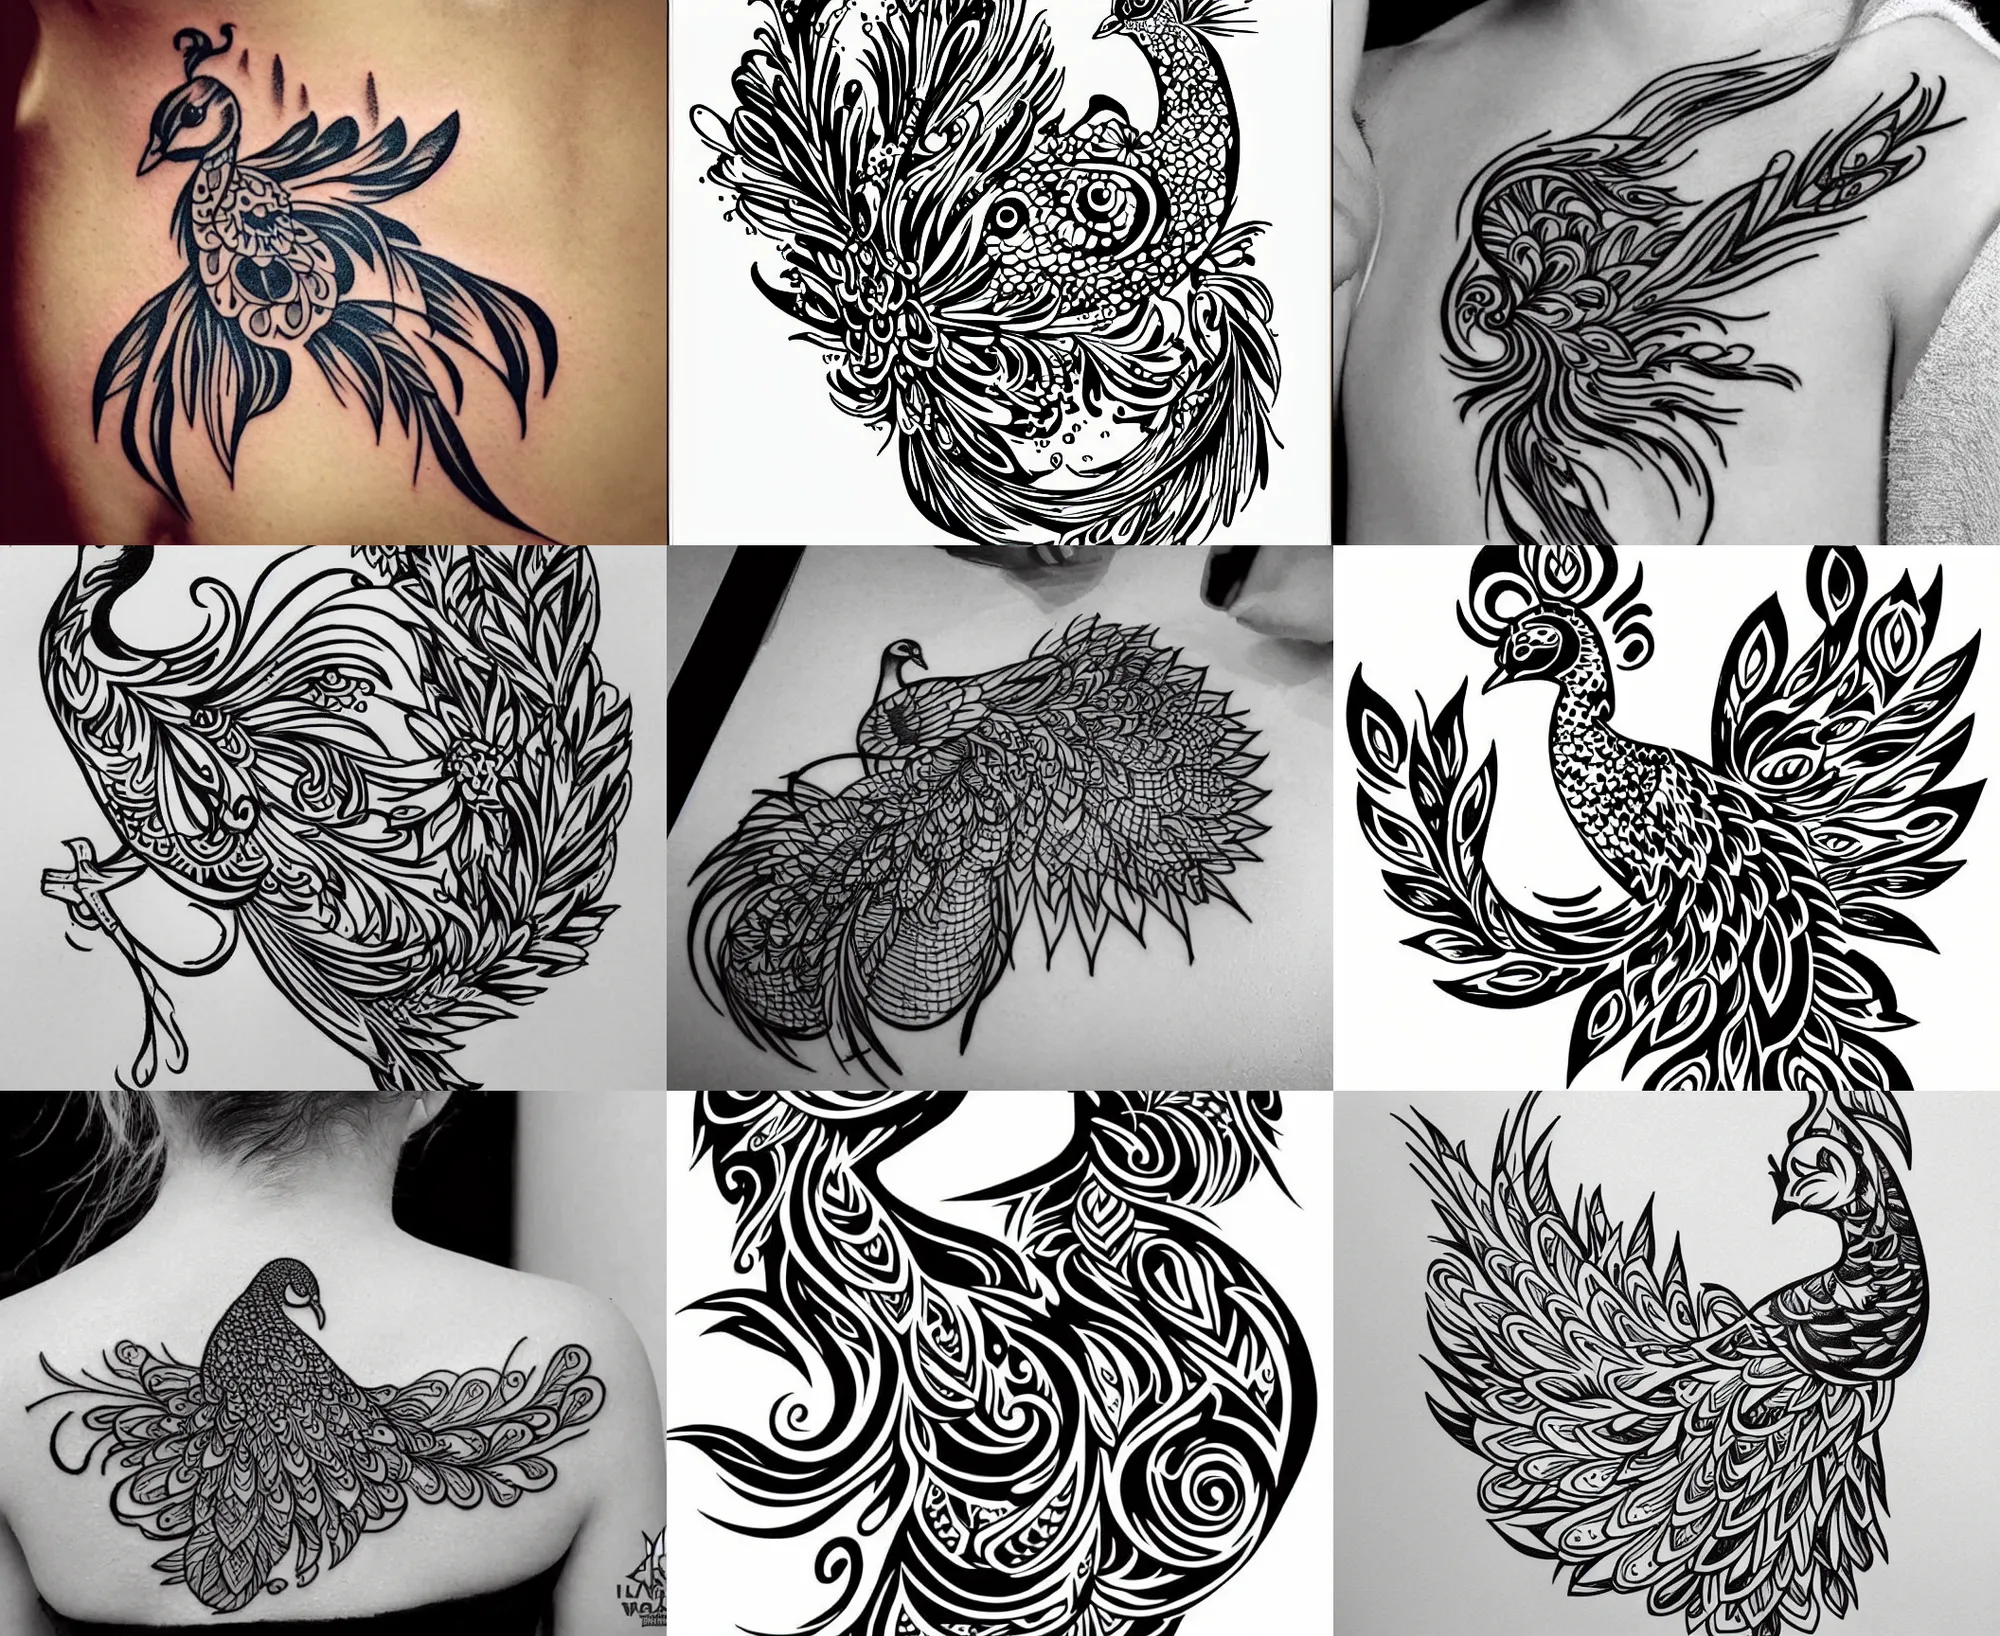 Minimalist Cross and Symbols Tattoo Design – Tattoos Wizard Designs